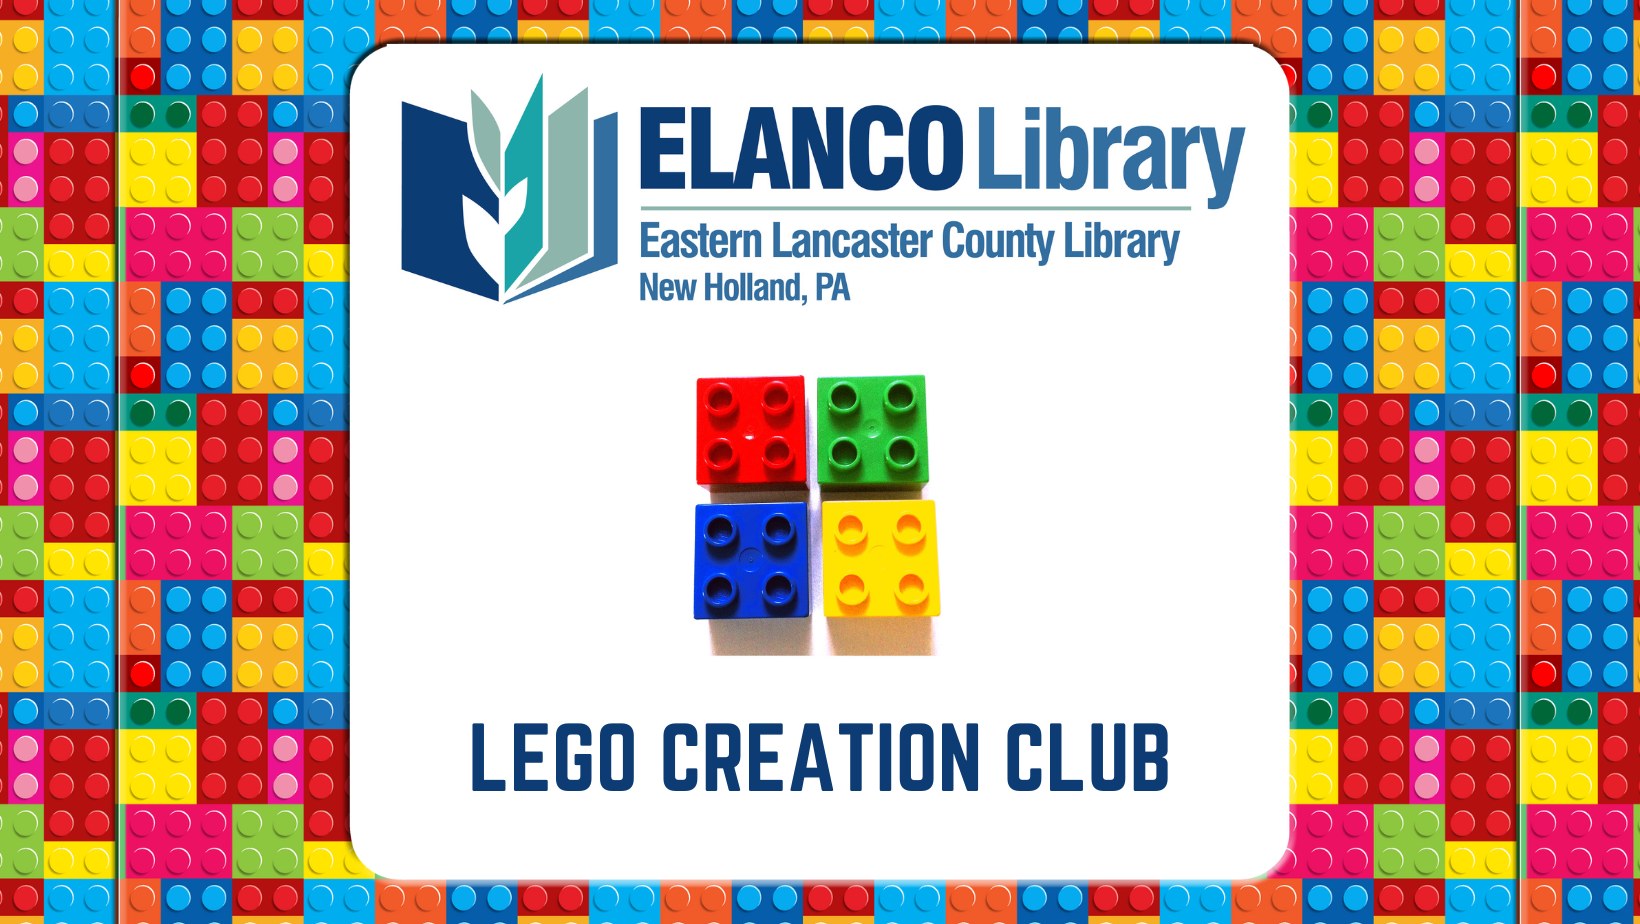 ELANCO Library LEGO Creation Club